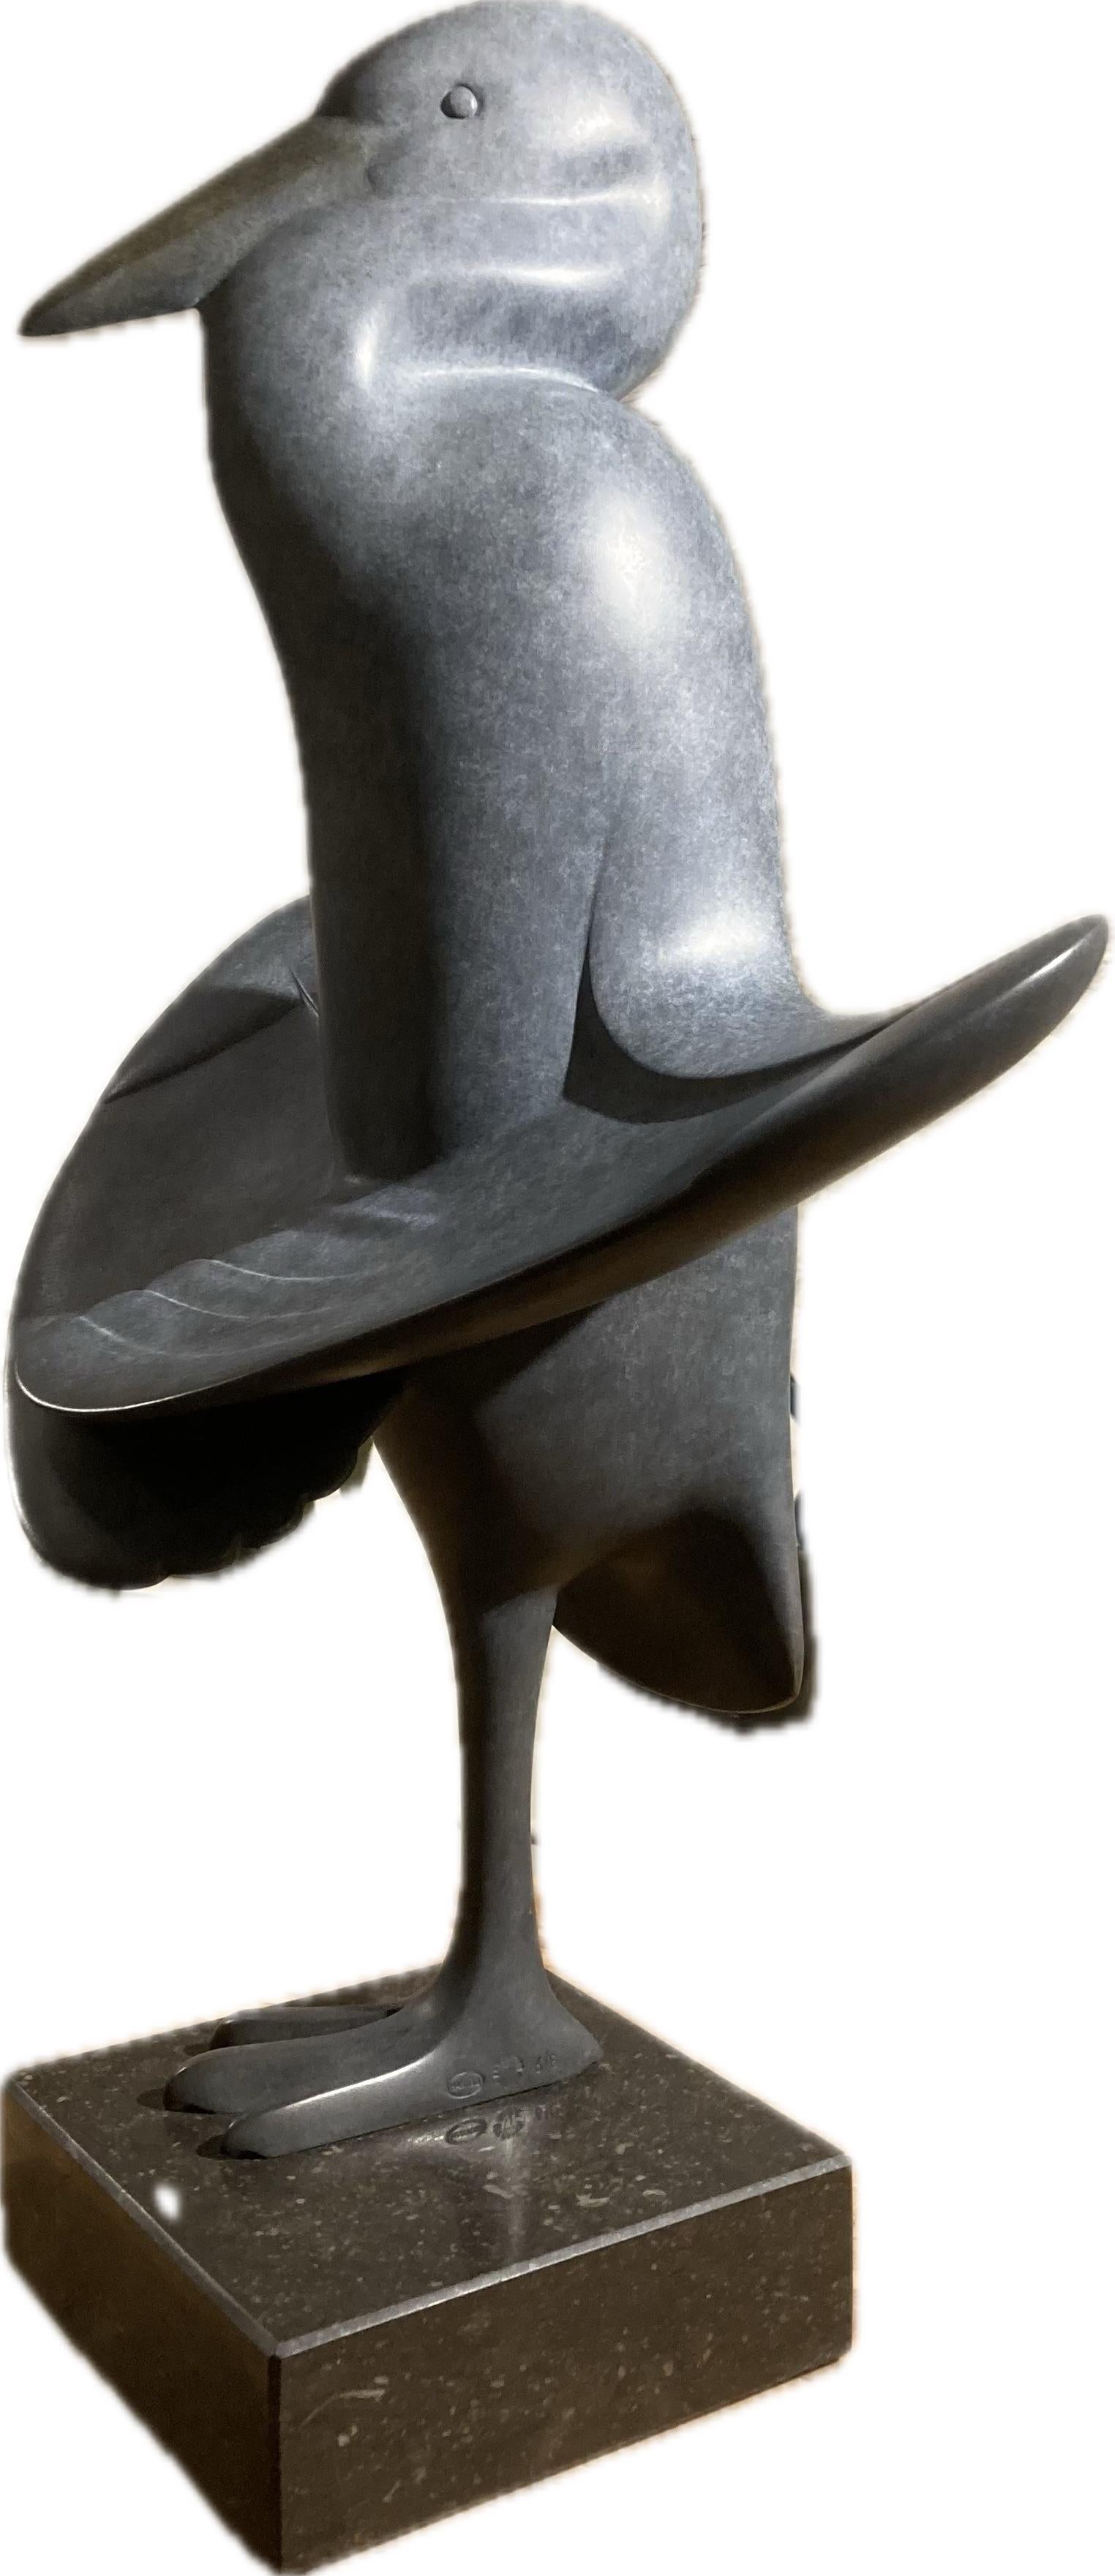 Evert den Hartog Figurative Sculpture - Reiger In De Zon Heron In The Sun Bronze Sculpture Limited Edition In Stock